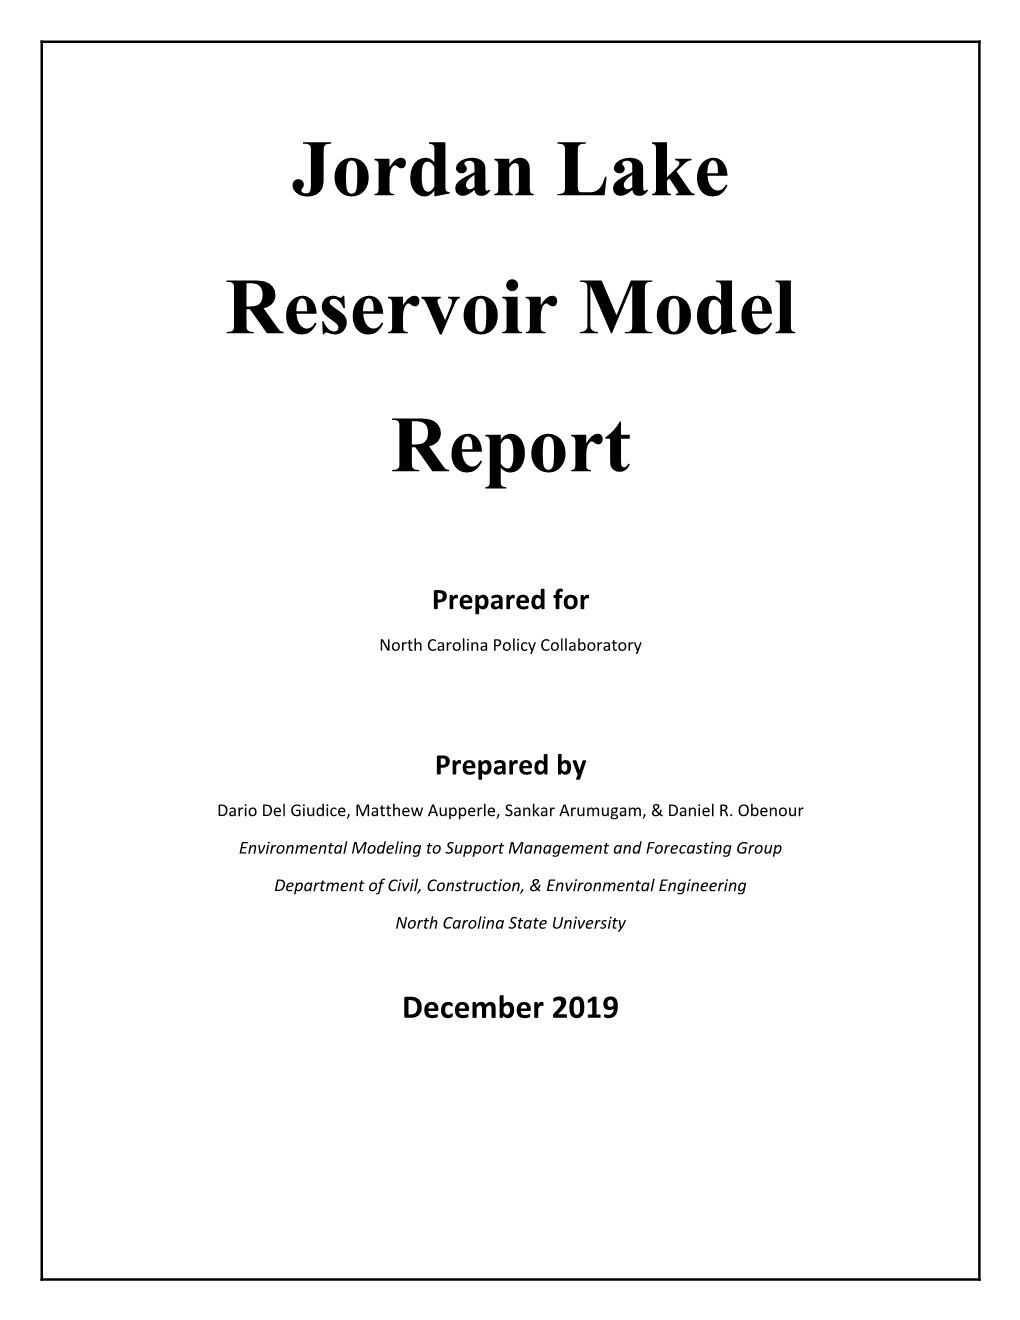 Jordan Lake Reservoir Model Report